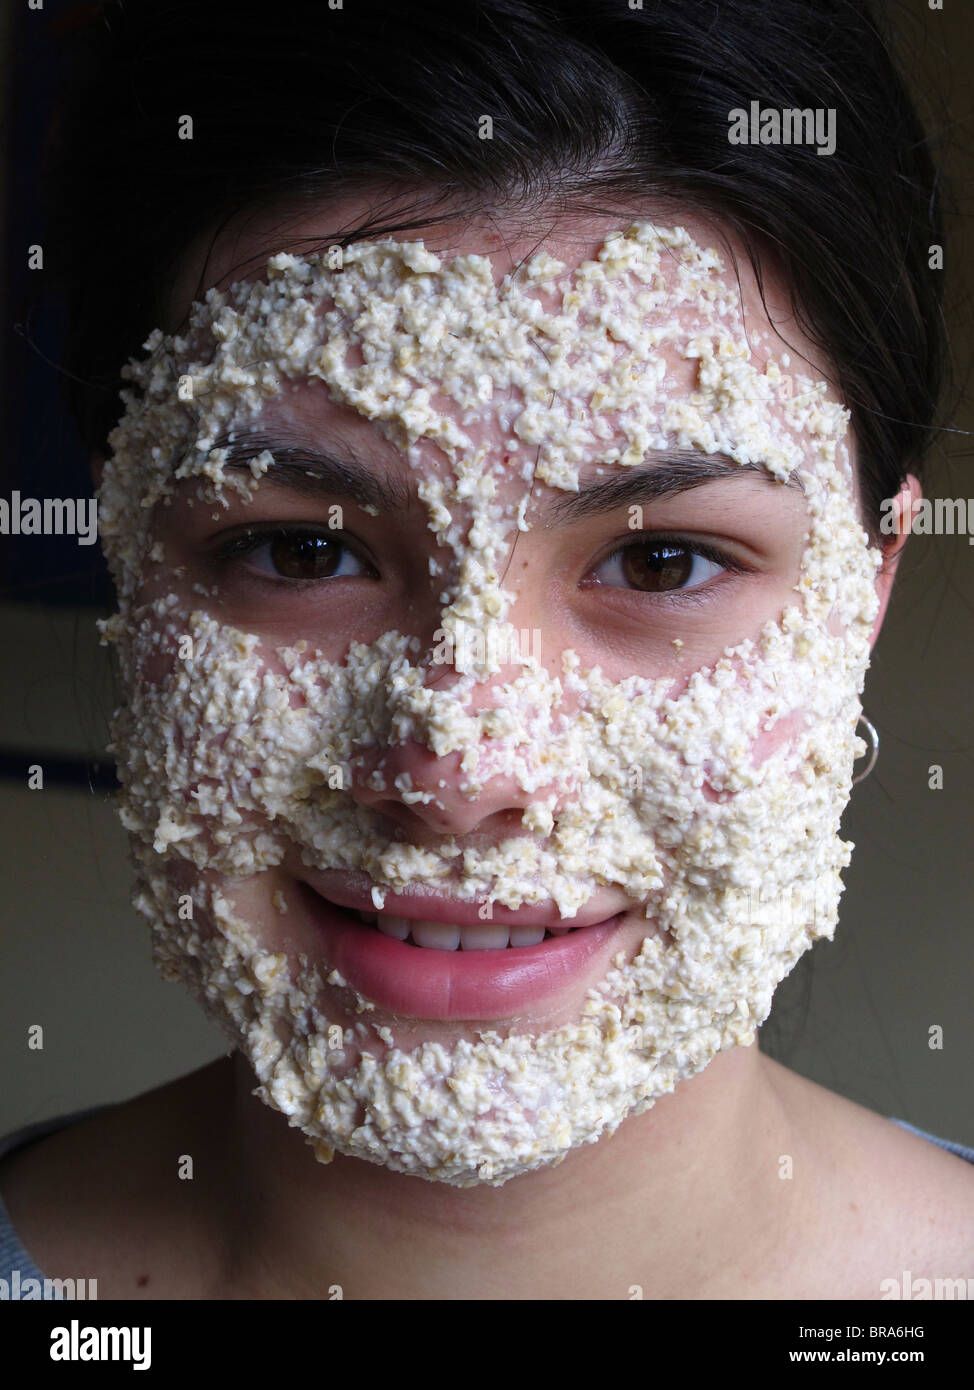 Ragazza adolescente utilizzando una maschera di avena per ripulire la sua pelle Foto Stock